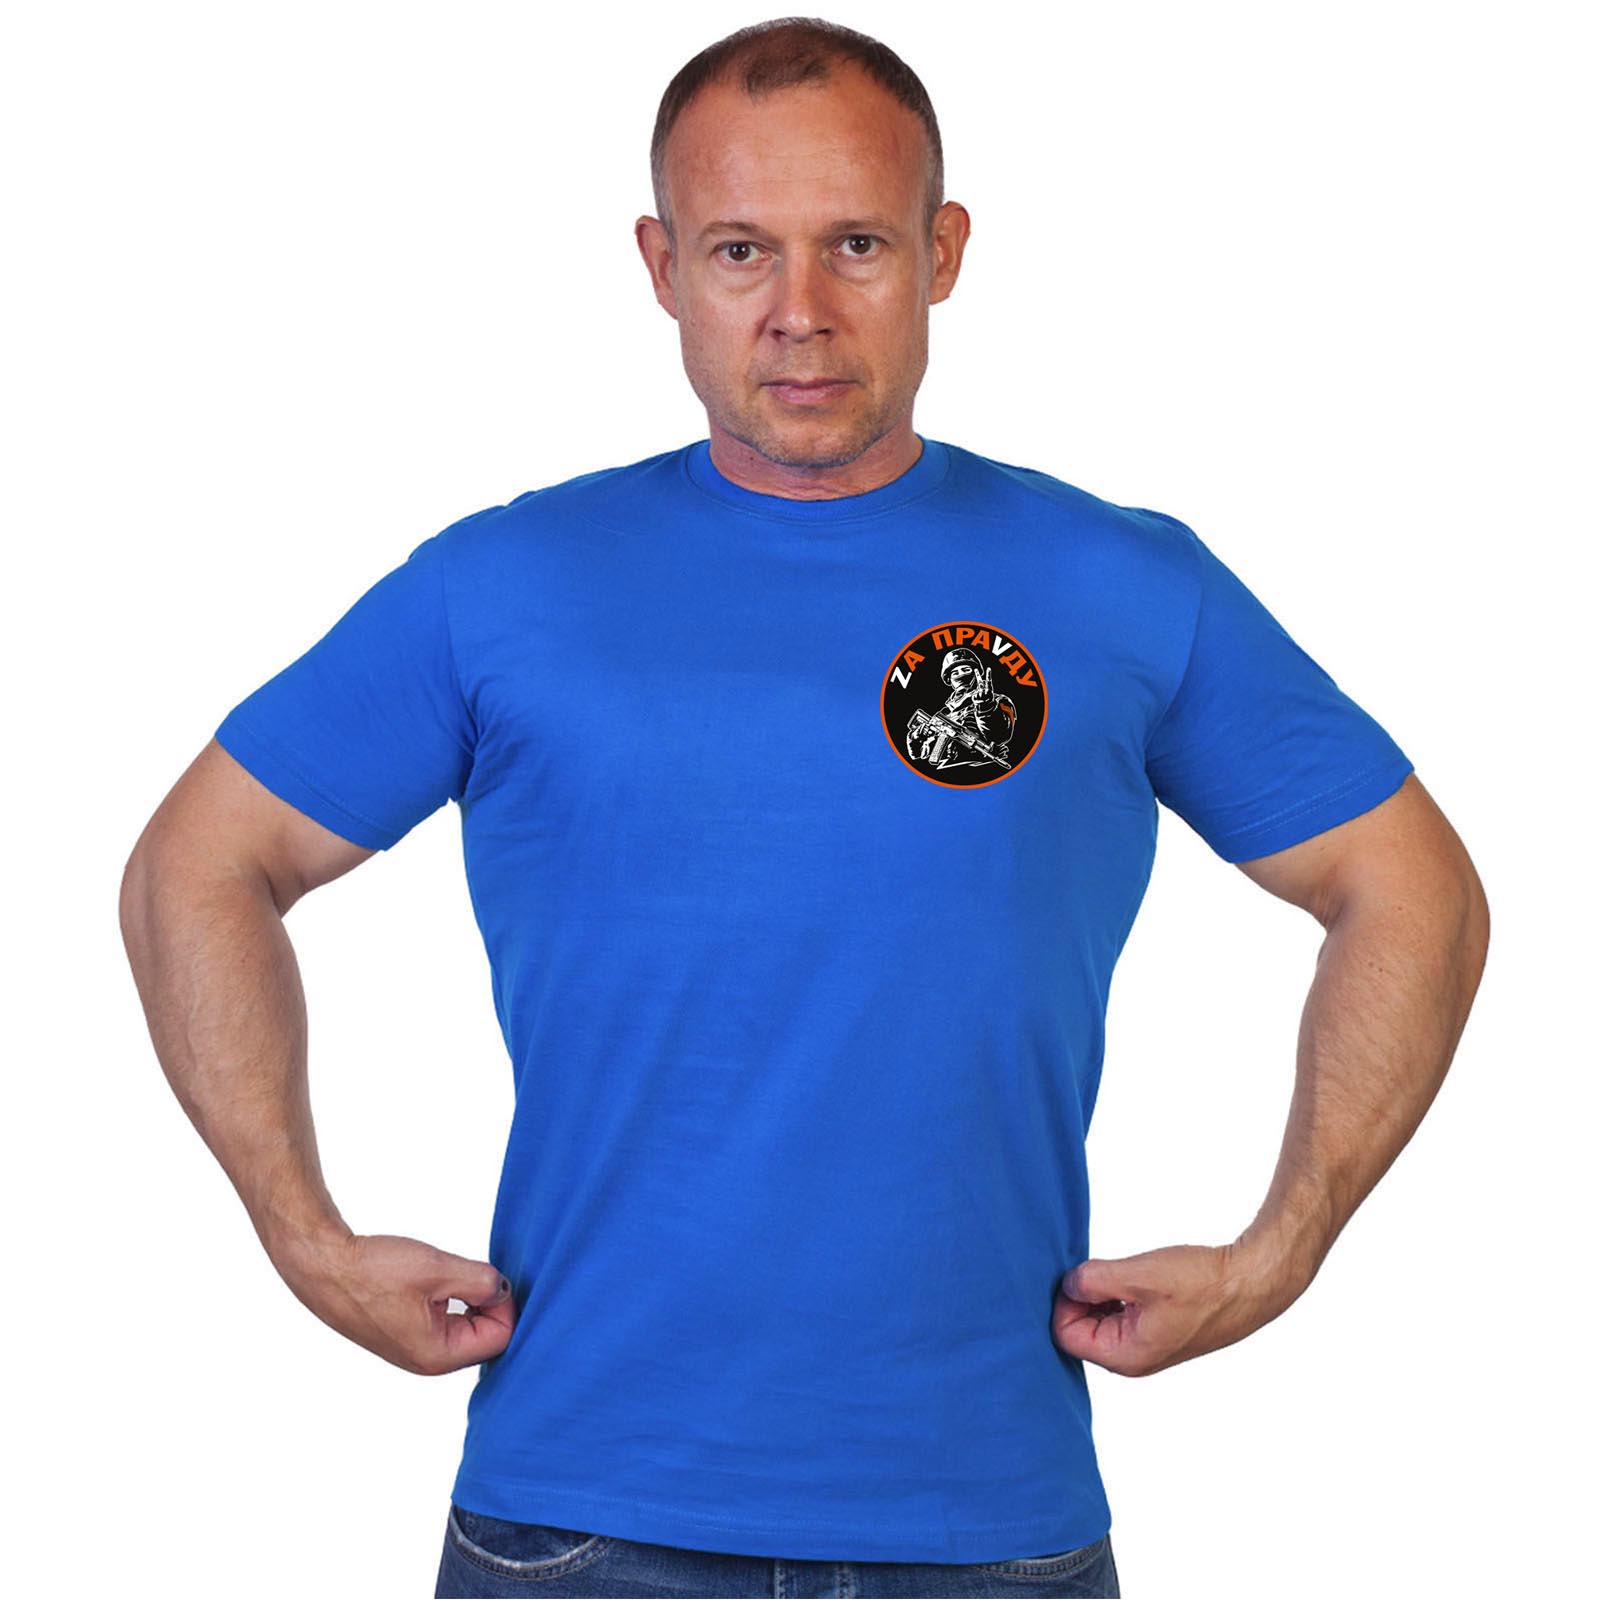 Васильковая футболка с термопереводкой "Zа праVду"